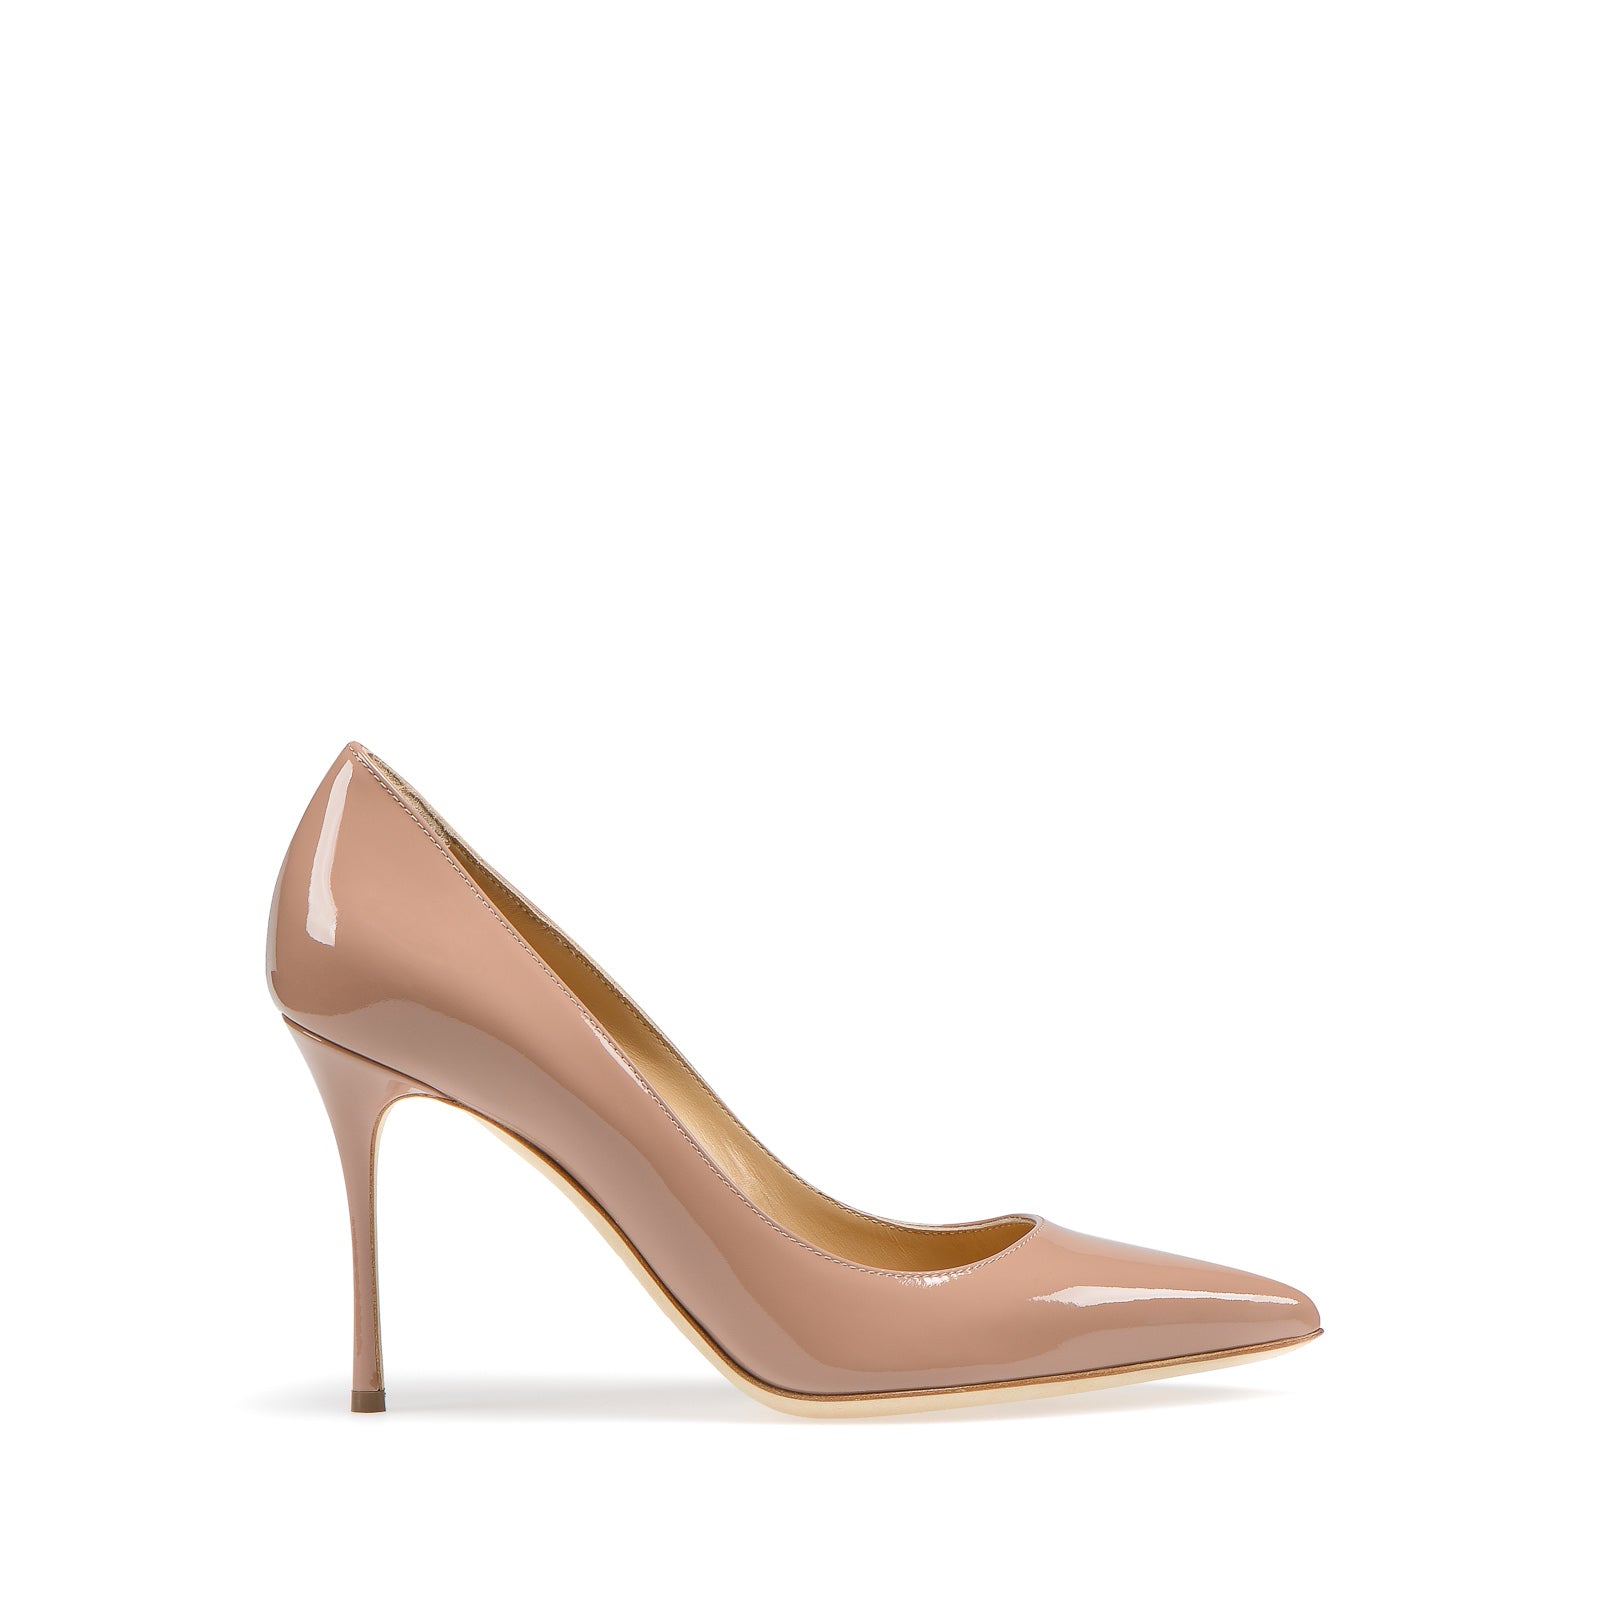 Sergio Rossi Godiva pump heels in pink/nude